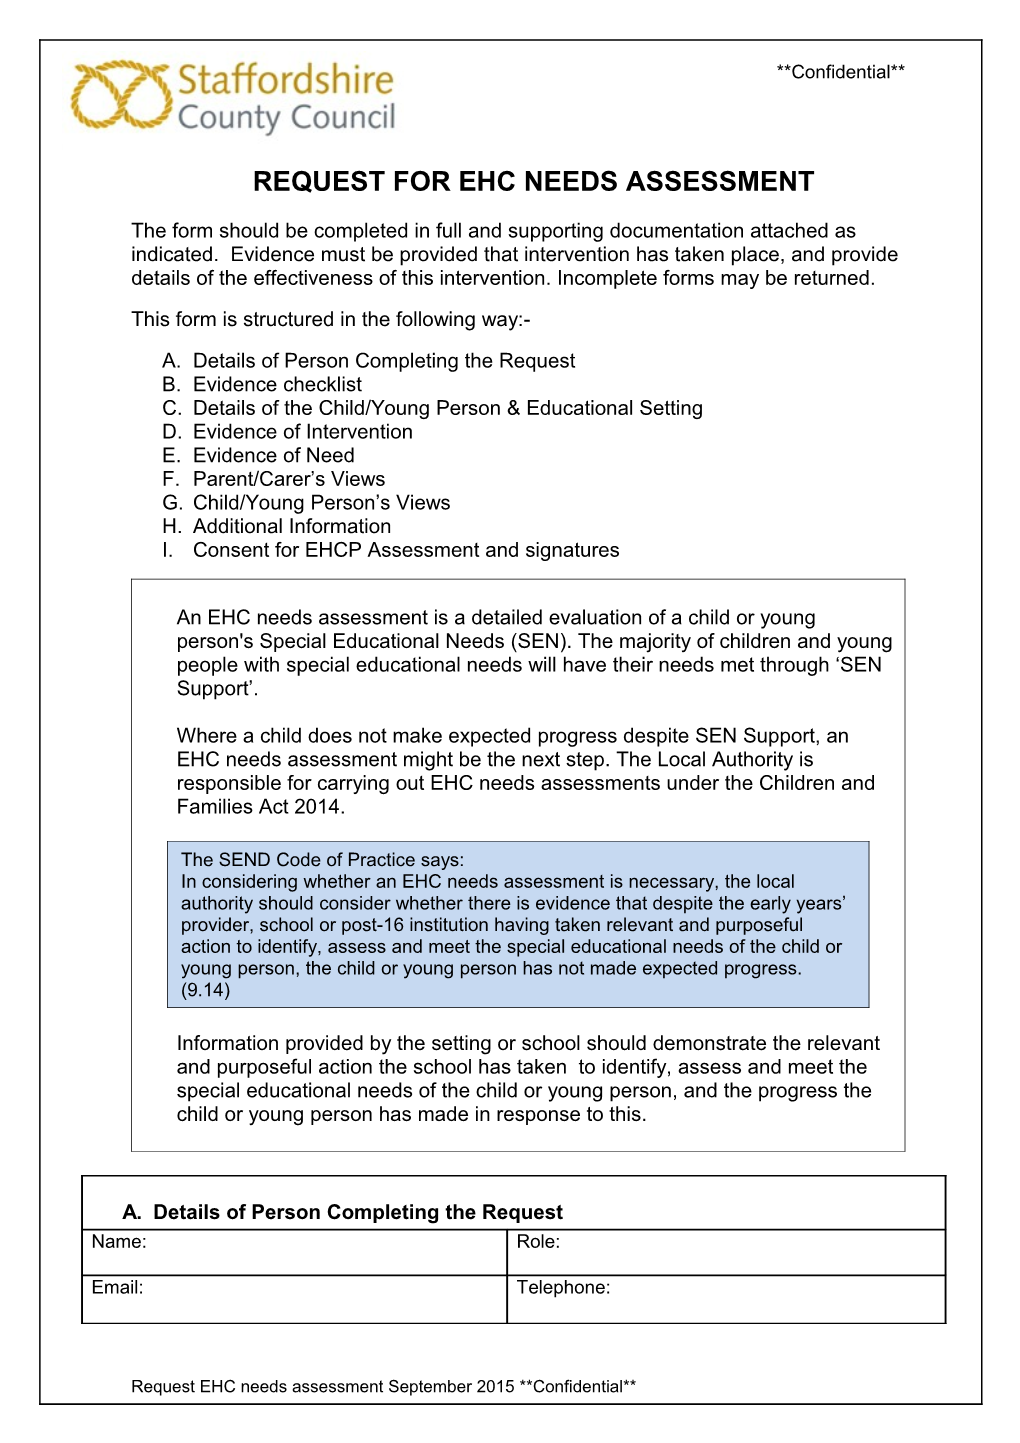 School EHC Needs Assessment Request September 2015